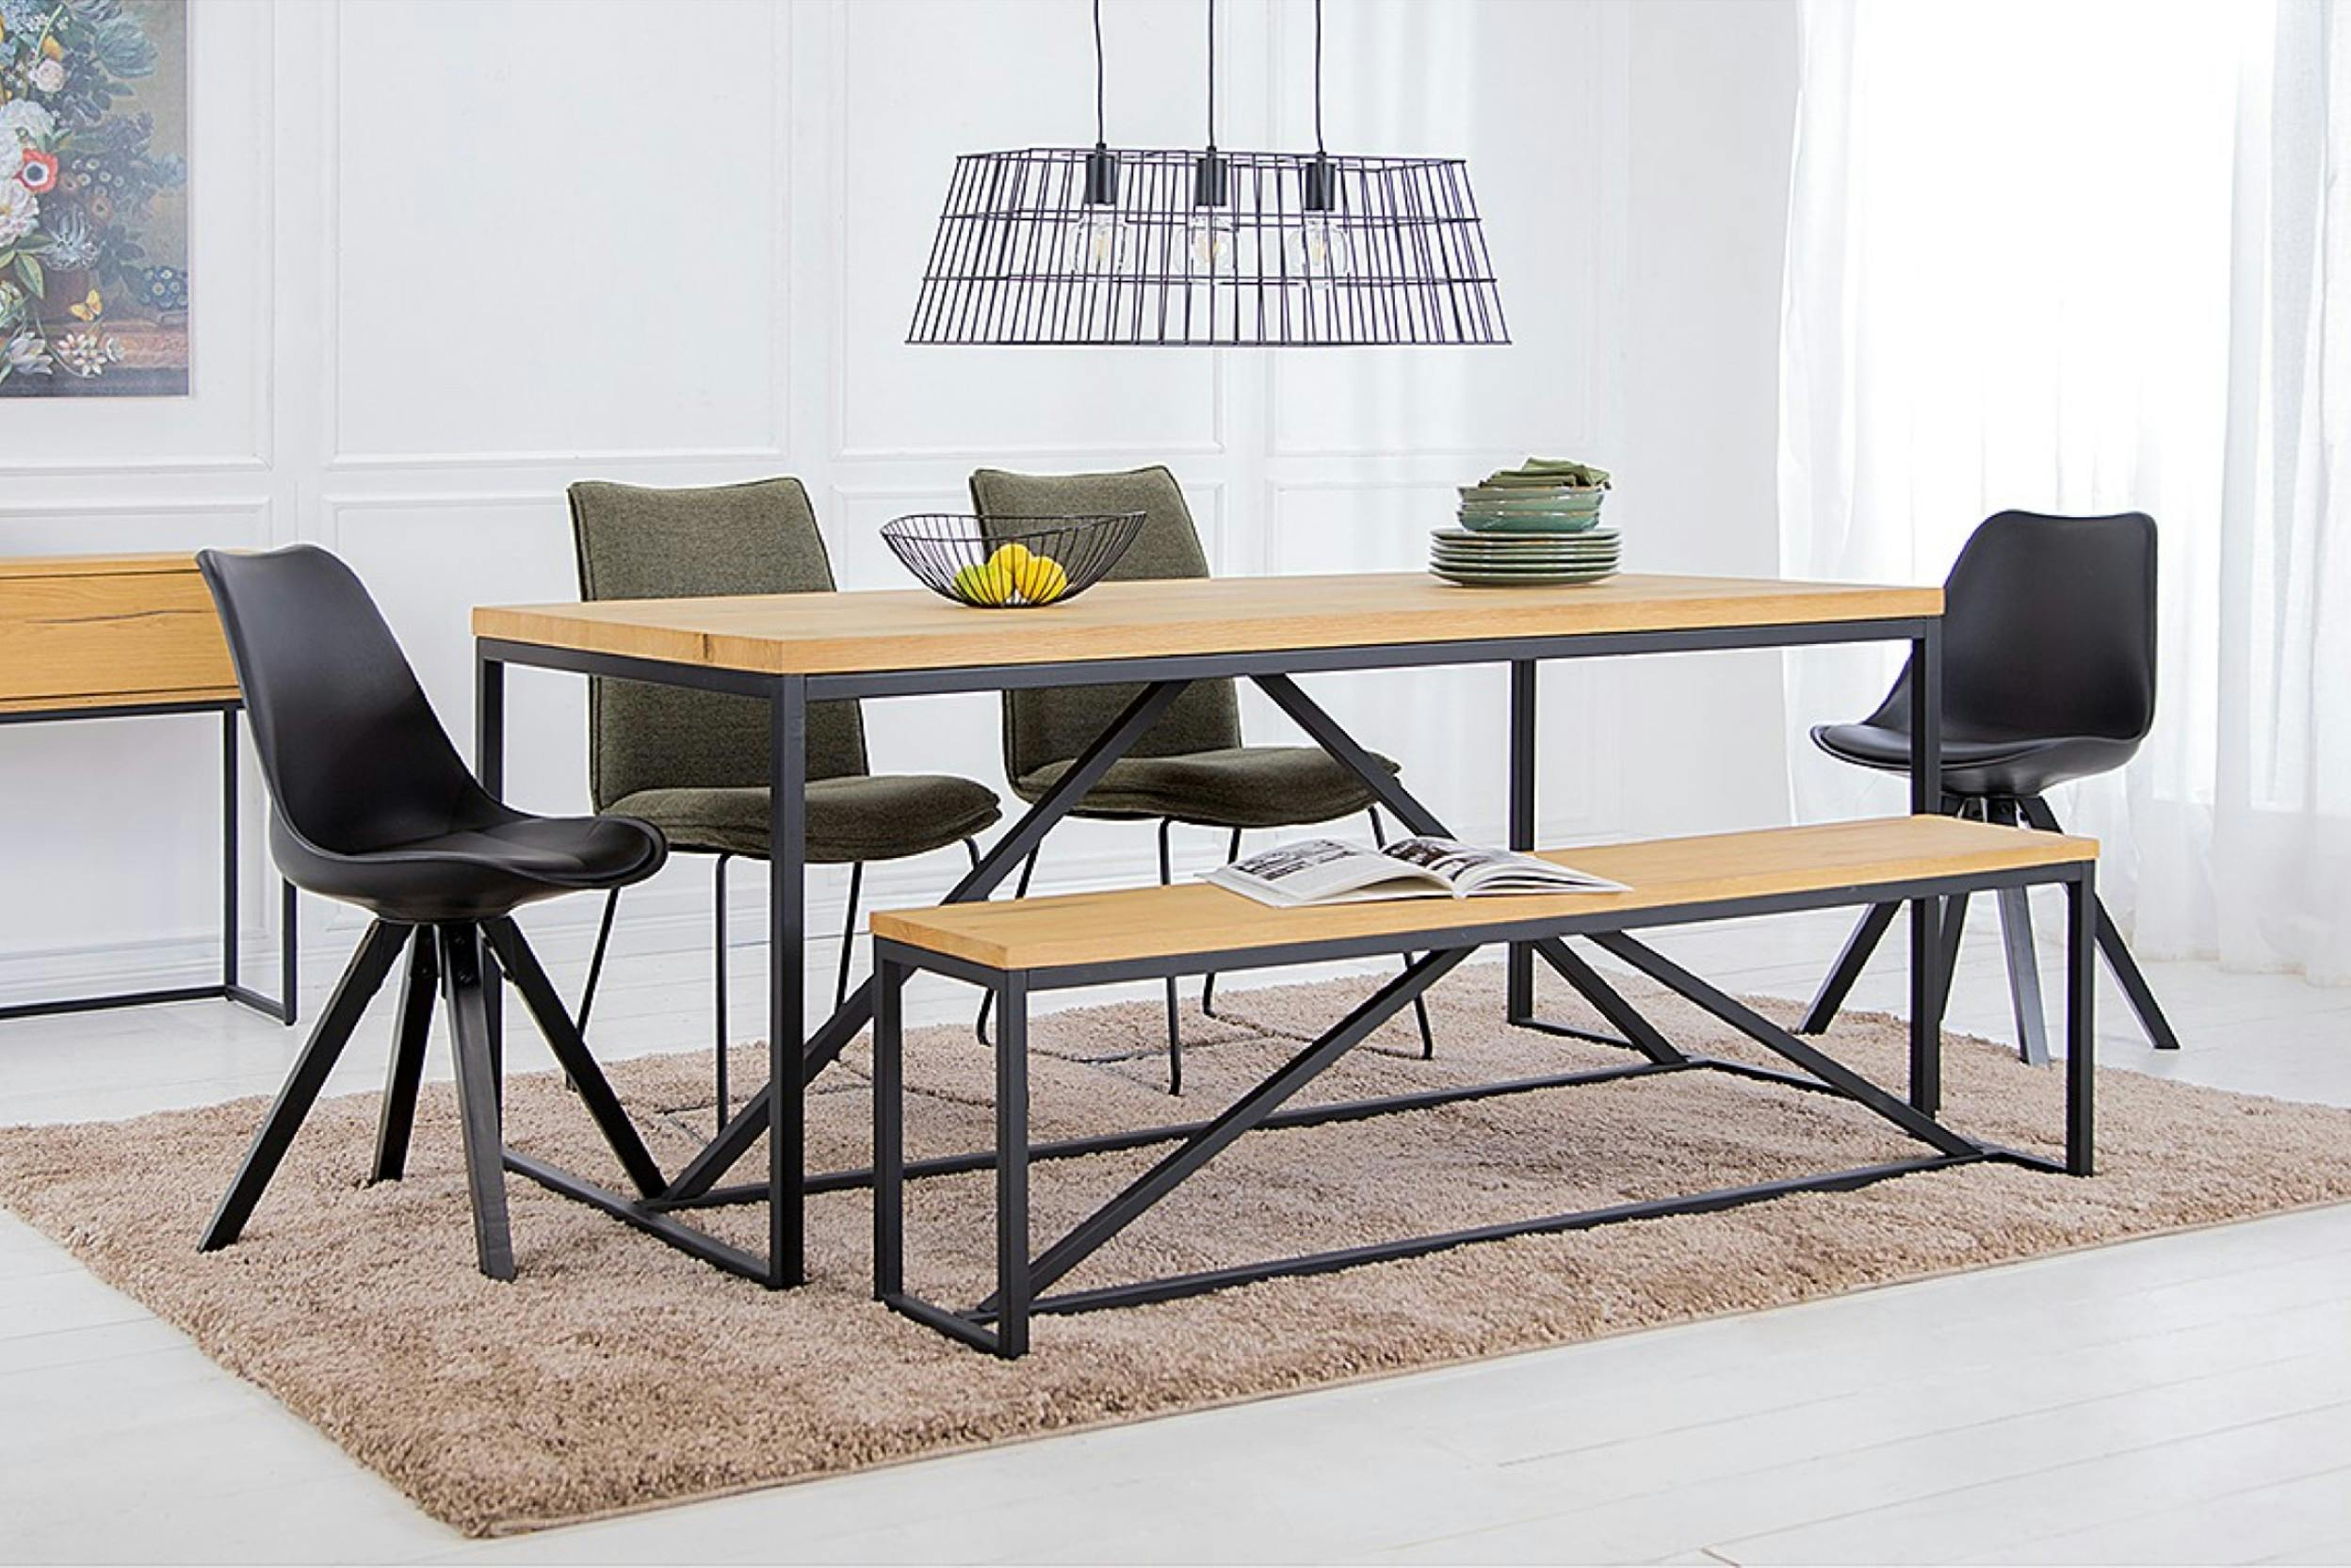 Esstisch mit Bank und vier Stühlen, darüber eine schwarze Pendelleuchte im Industrial-Design